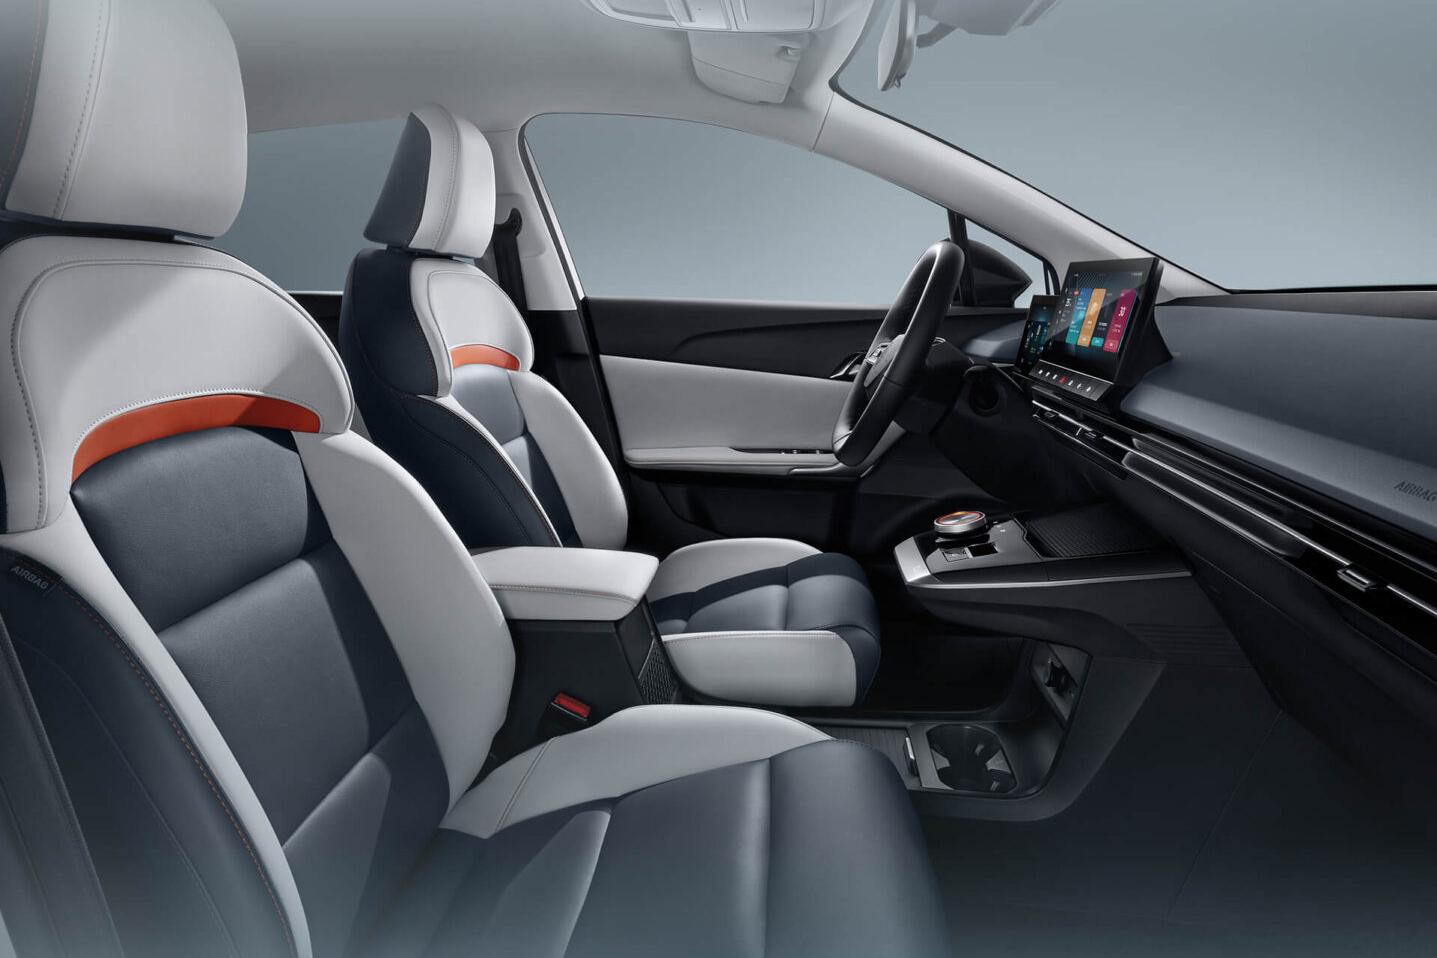 MG Mulan interior - Seats